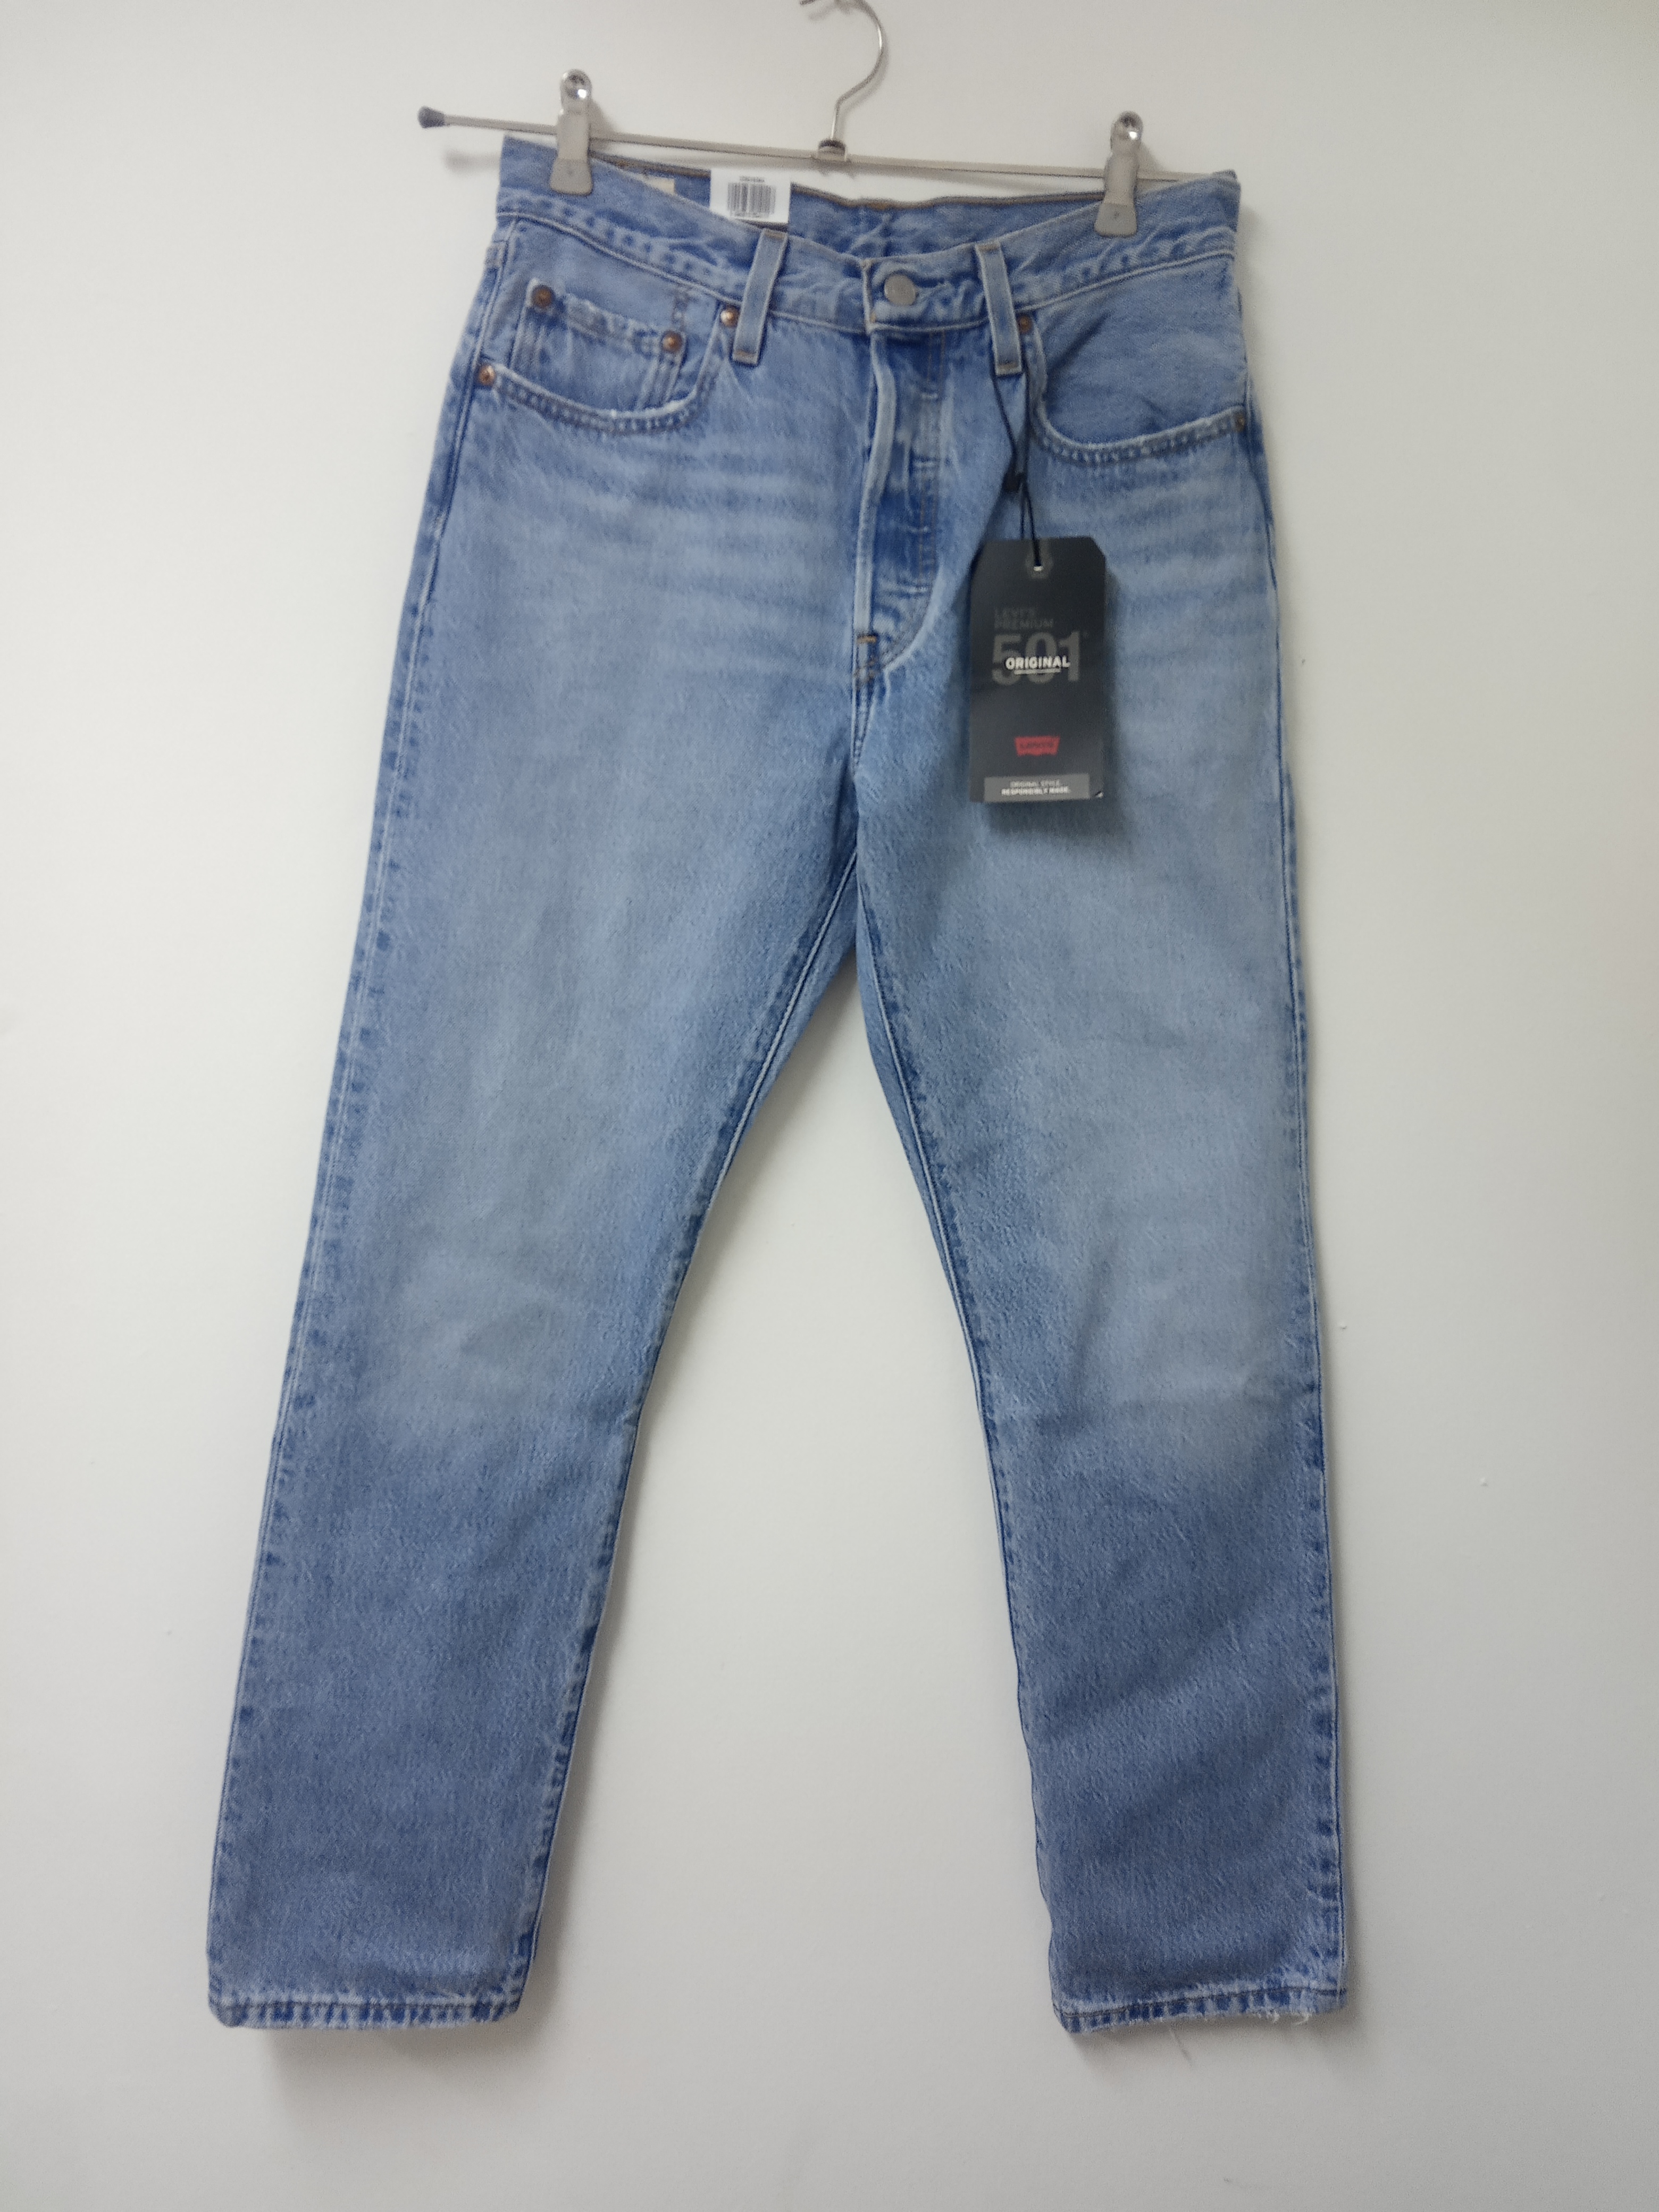 תמונה 1 ,ג'ינס ליווייס 501 אוריגינלי מי למכירה בתל אביב  ביגוד ואביזרים  ג'ינסים ומכנסיים